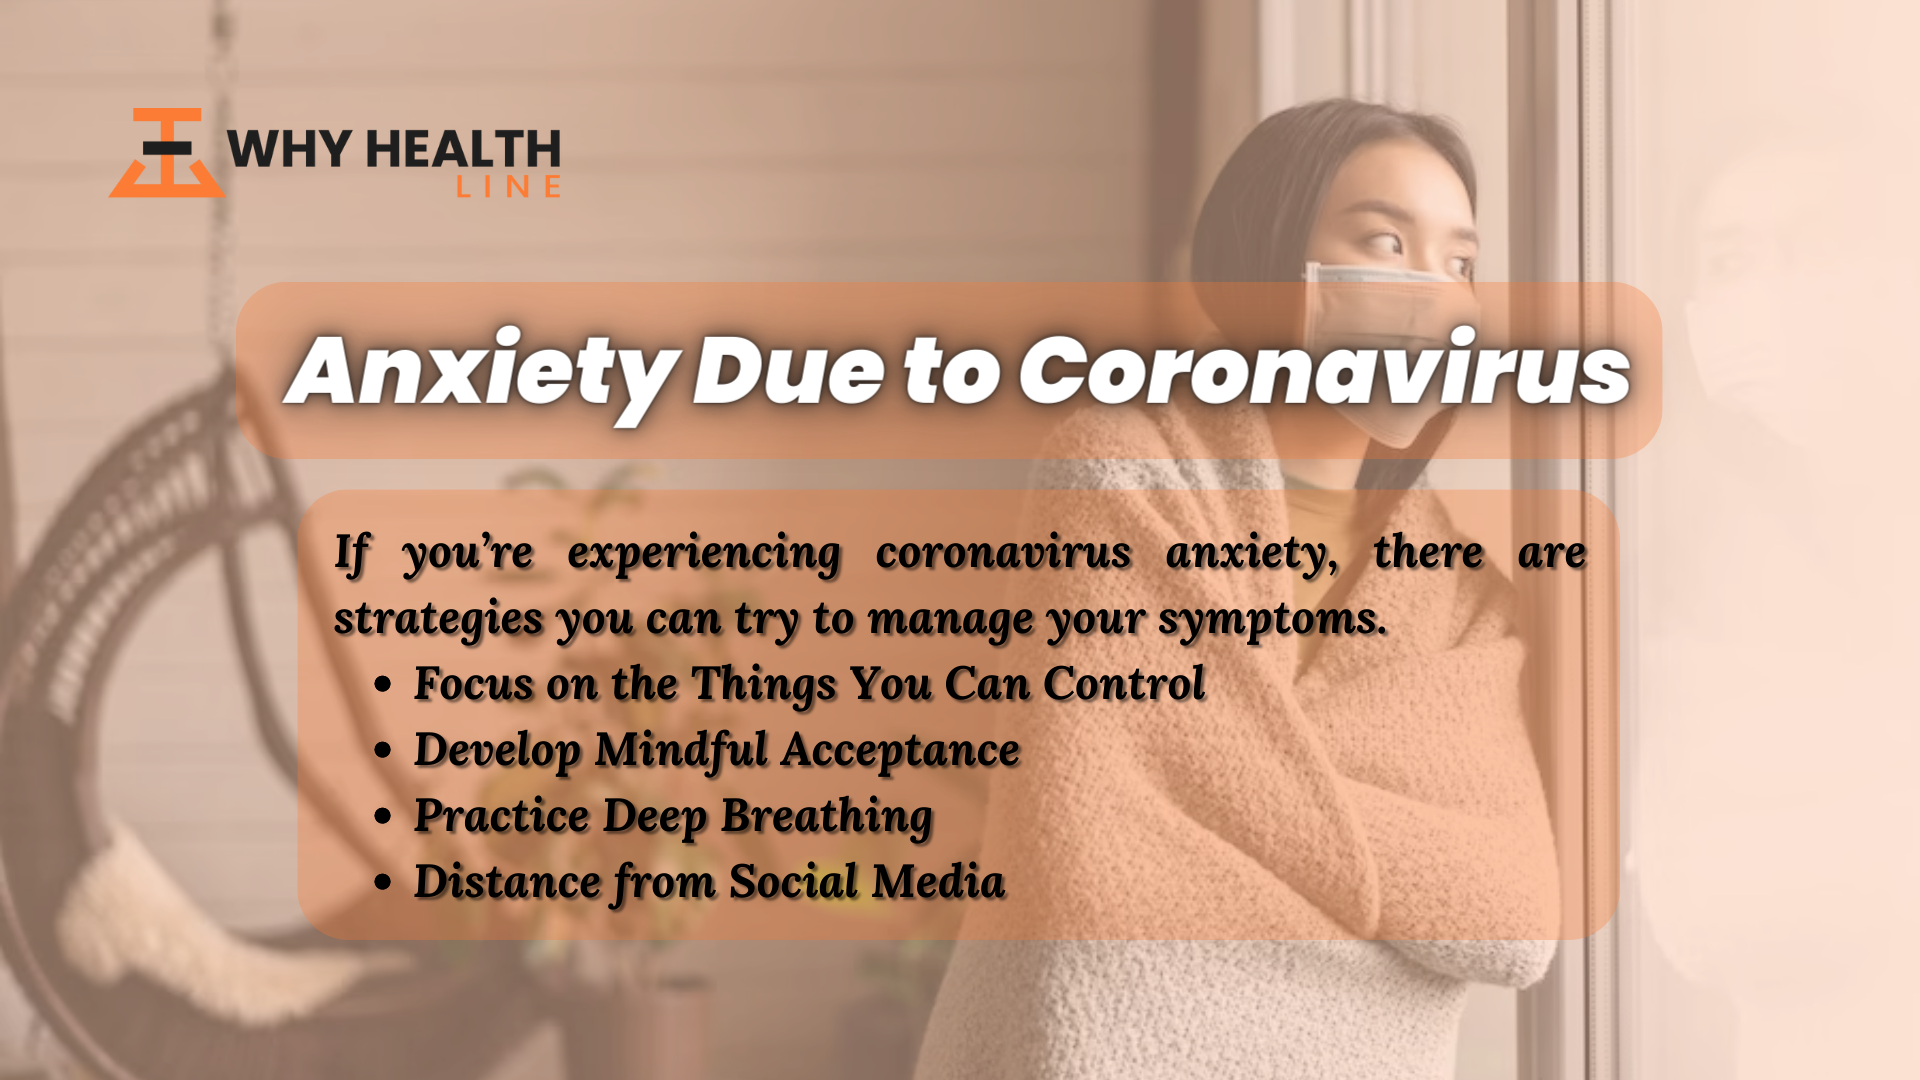 Anxiety due to Coronavirus